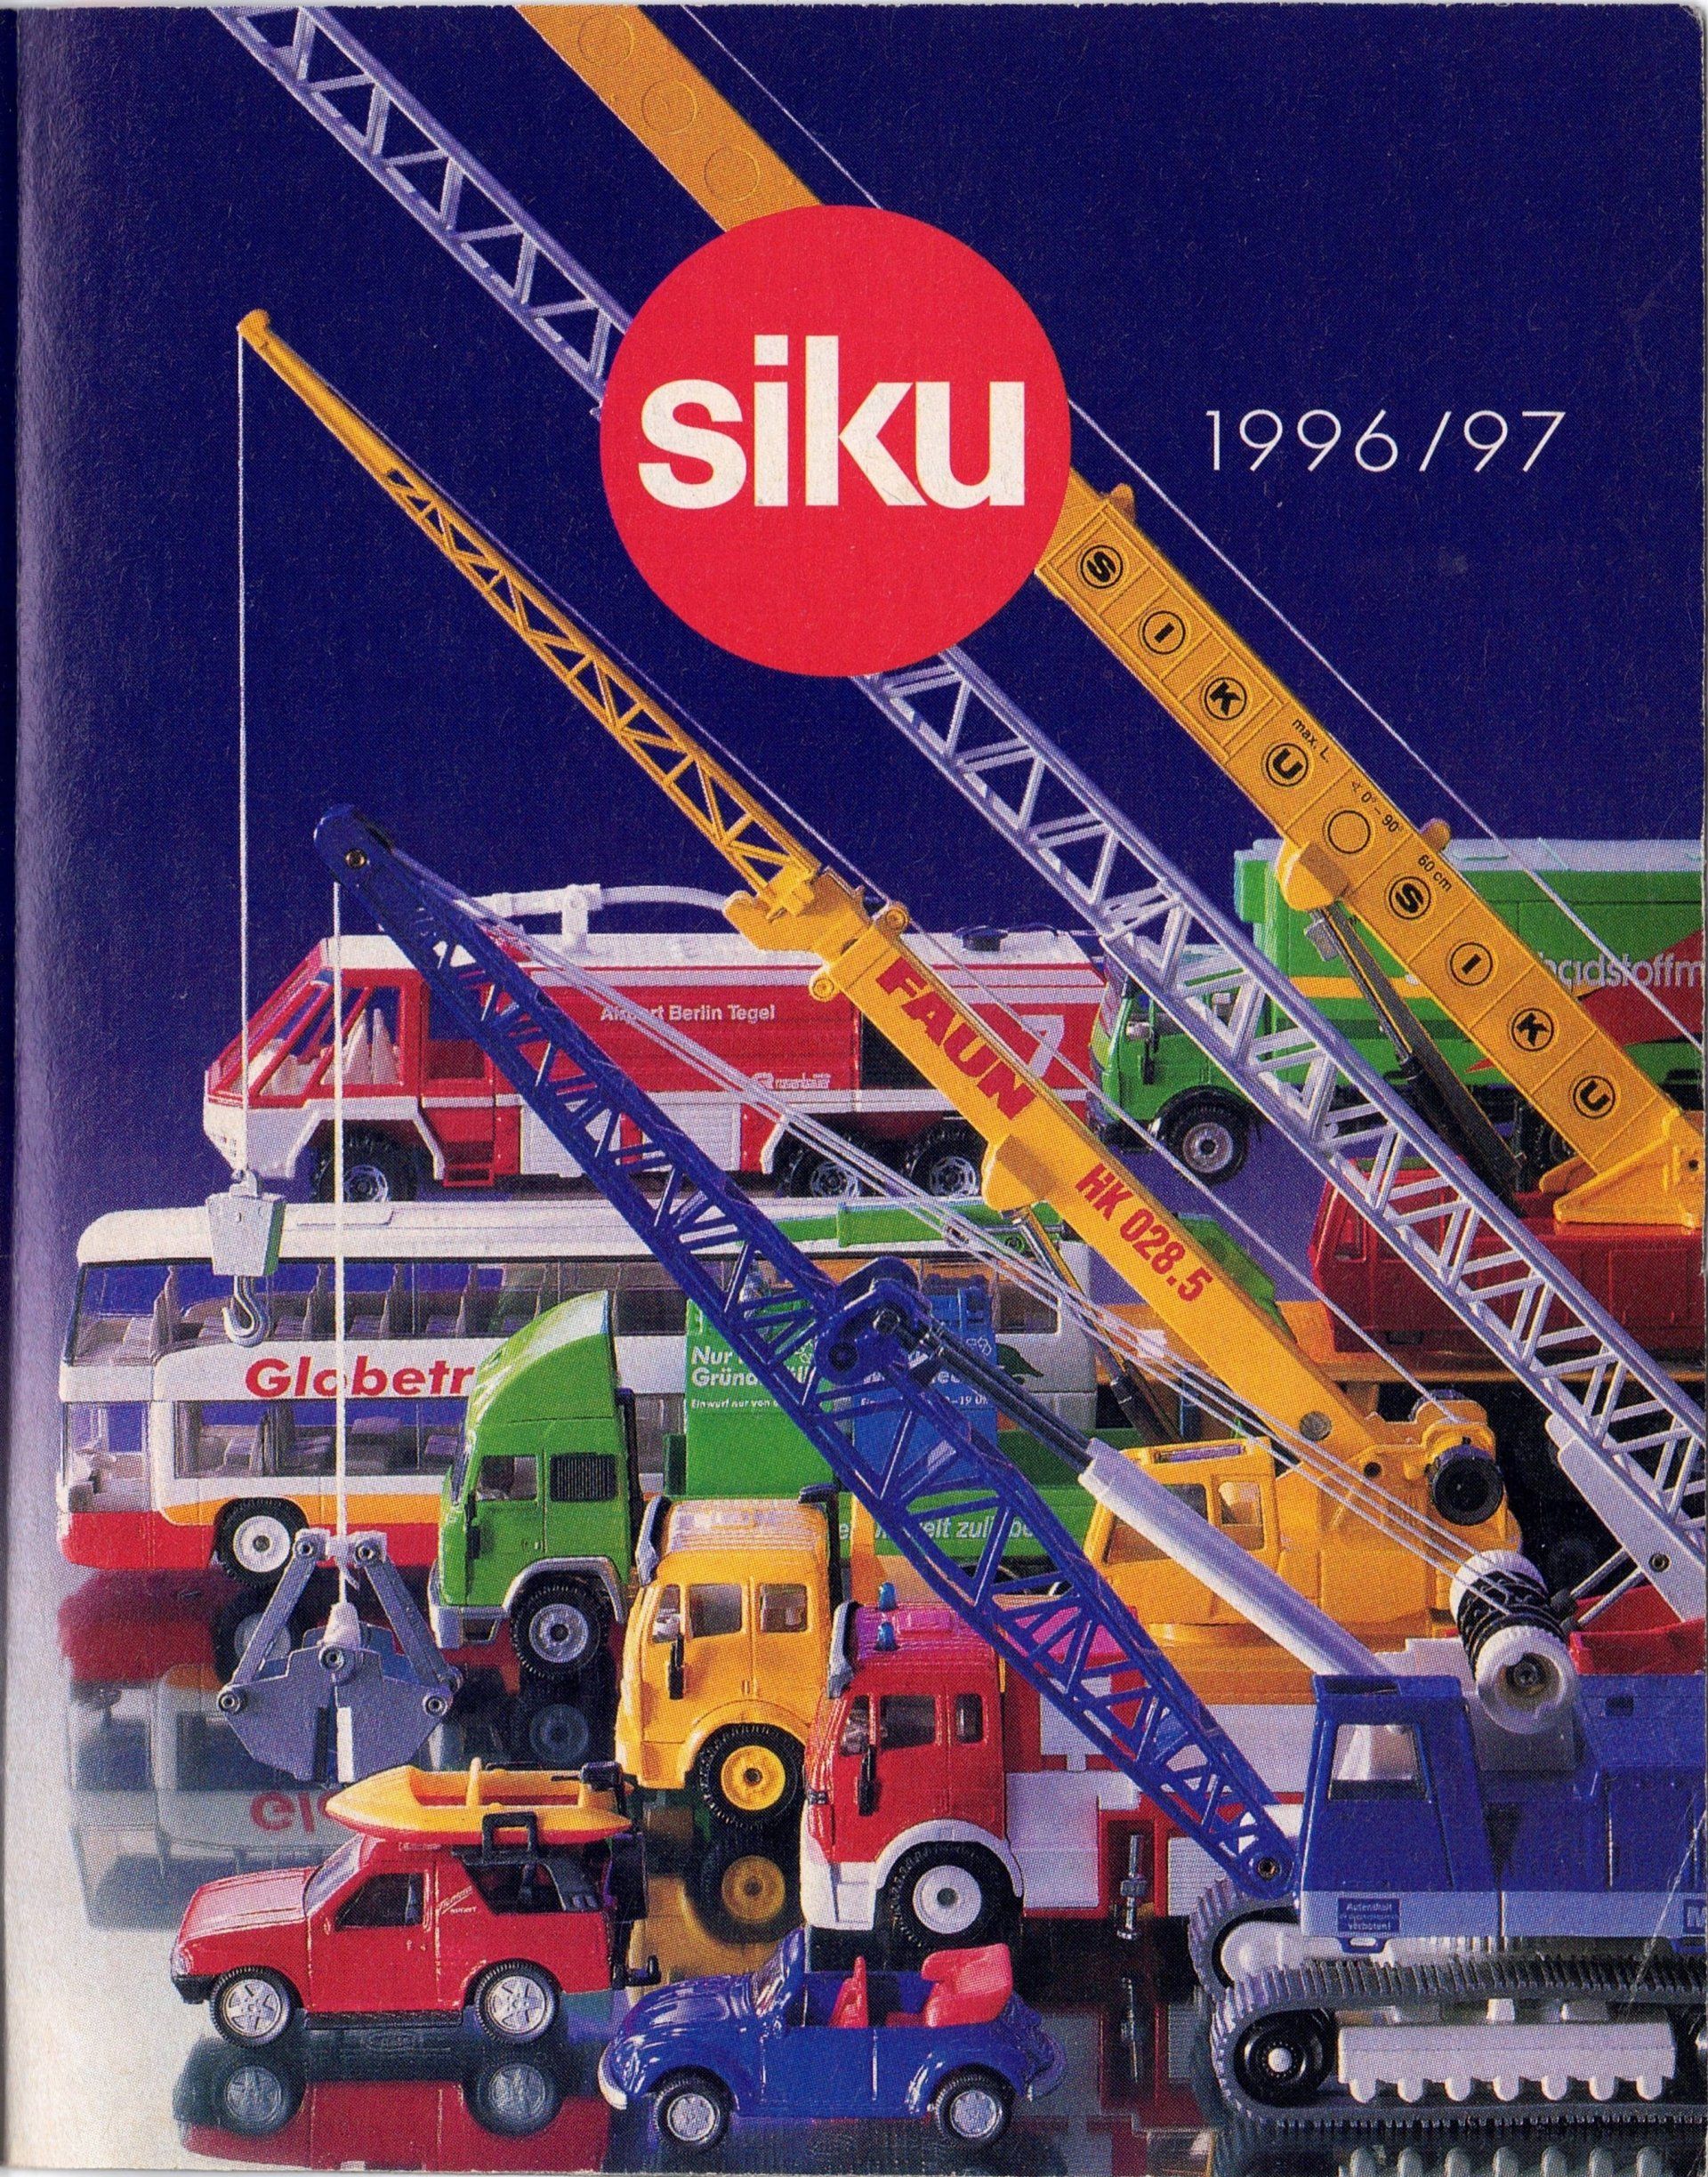 Siku Catalogue 1996-97